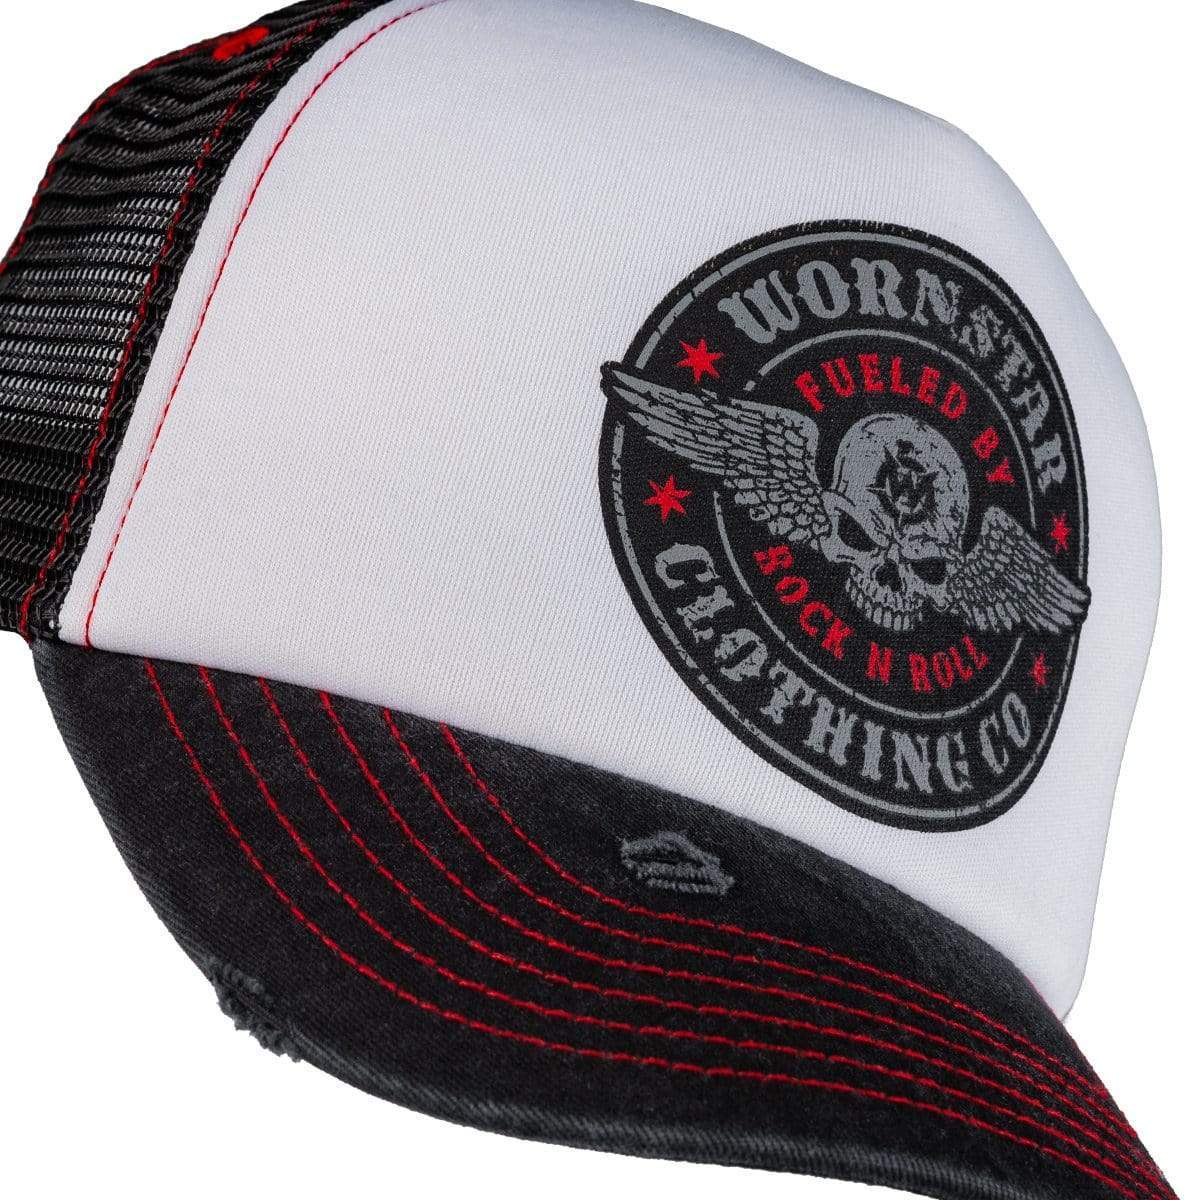 Wornstar Clothing Hat Fueled Trucker Hat